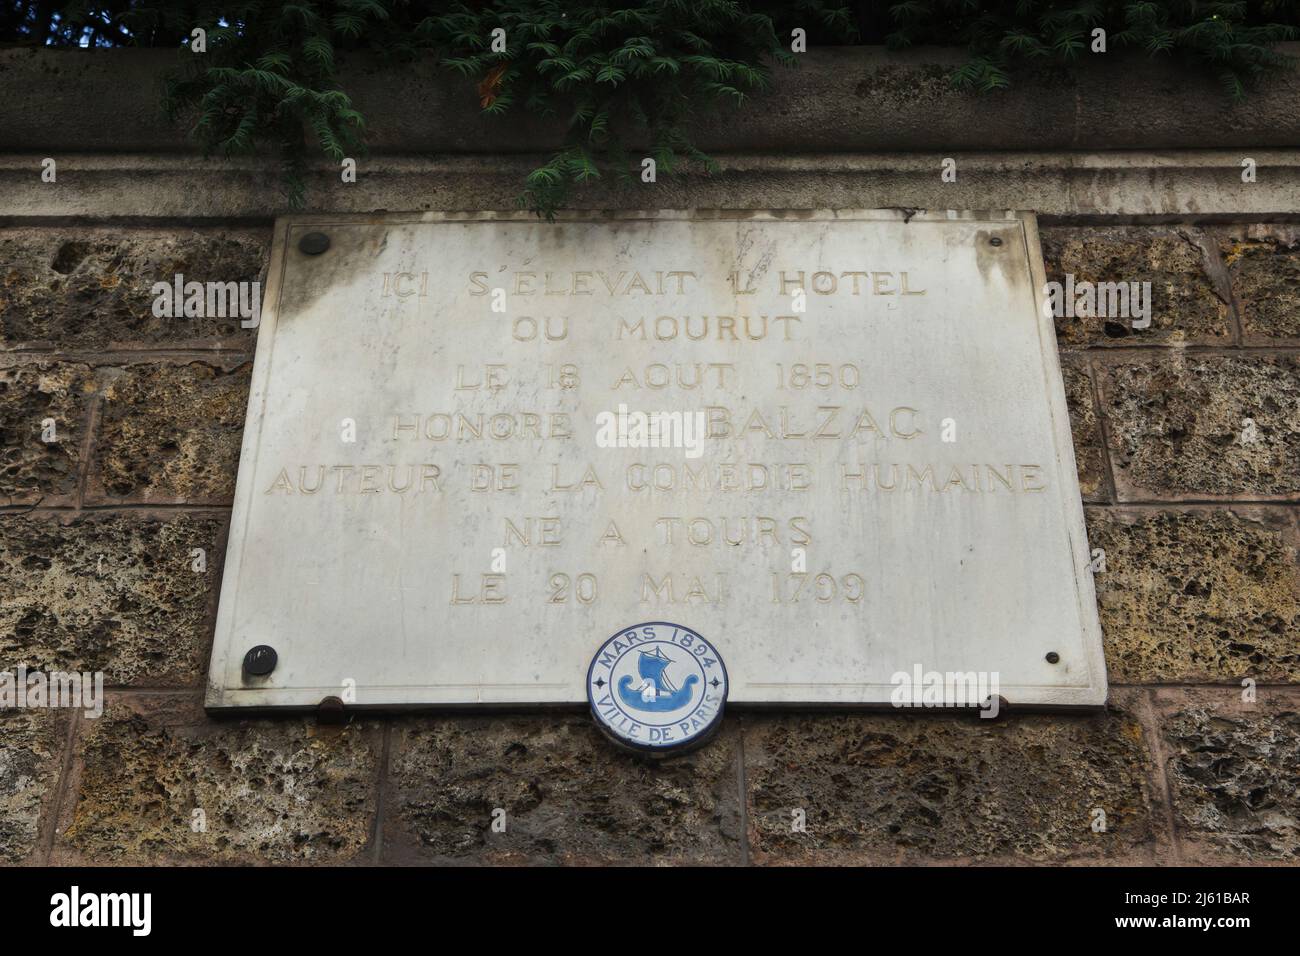 Placa conmemorativa dedicada al novelista francés Honoré de Balzac sobre el Hôtel Salomon de Rothschild en París, Francia. Honoré de Balzac murió en este lugar el 18 de agosto de 1850. Foto de stock